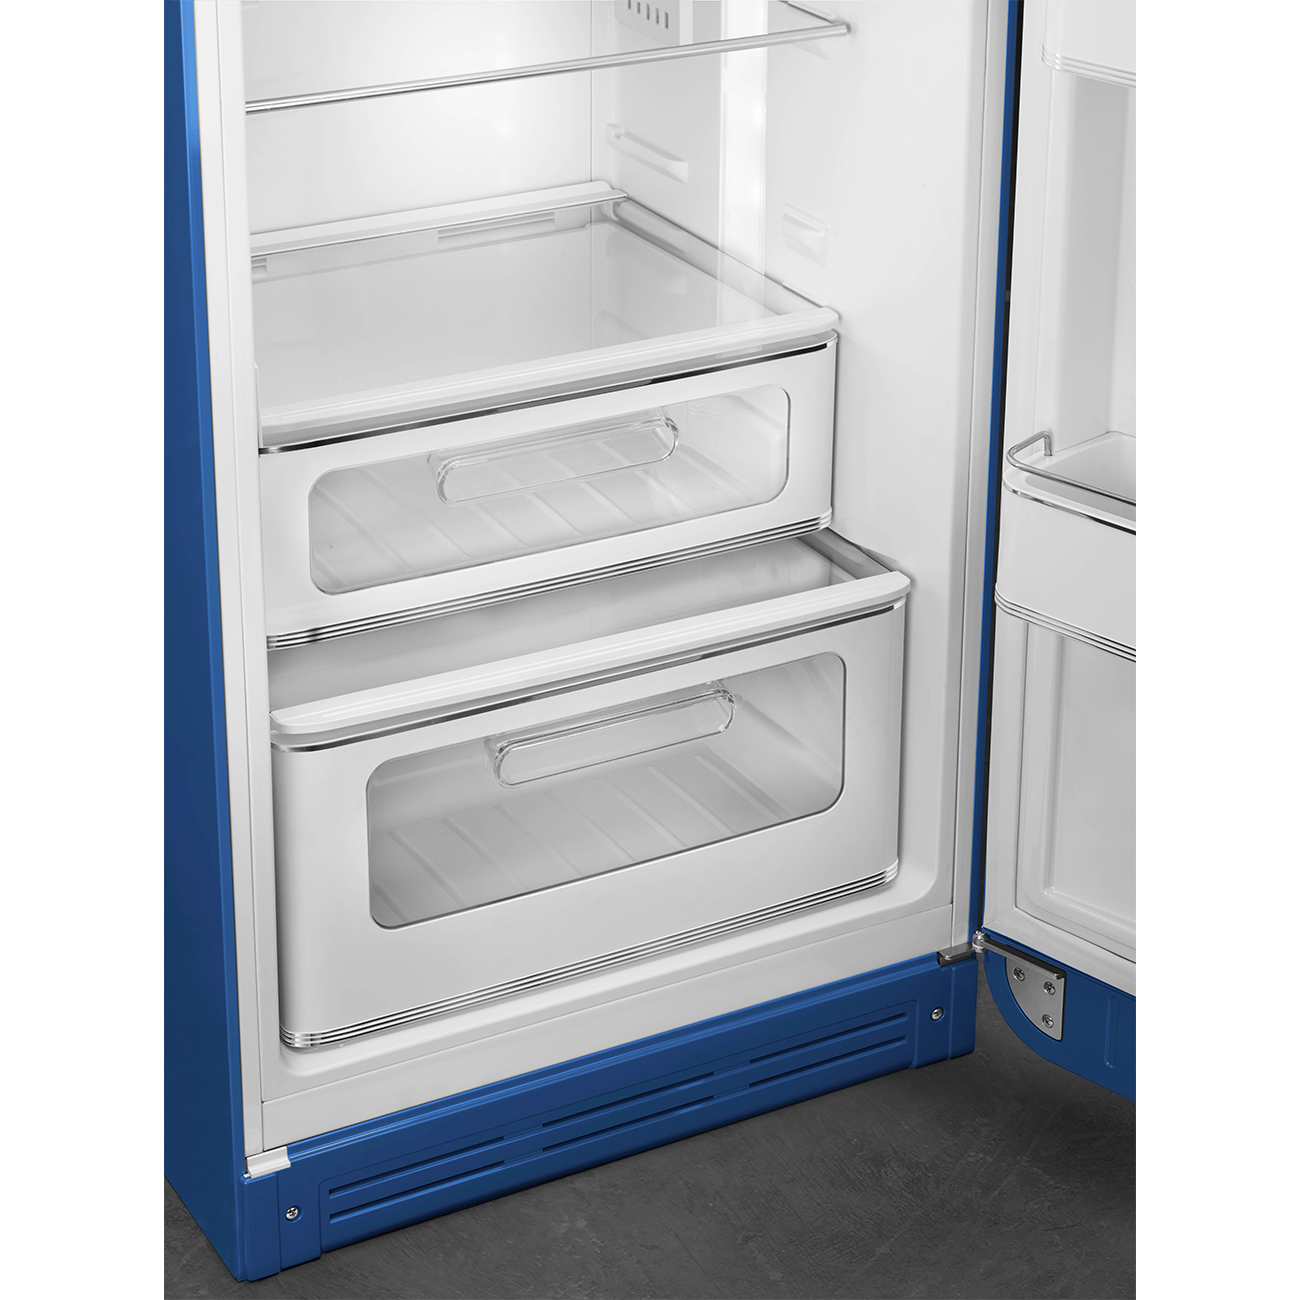 Blue refrigerator - Smeg_8